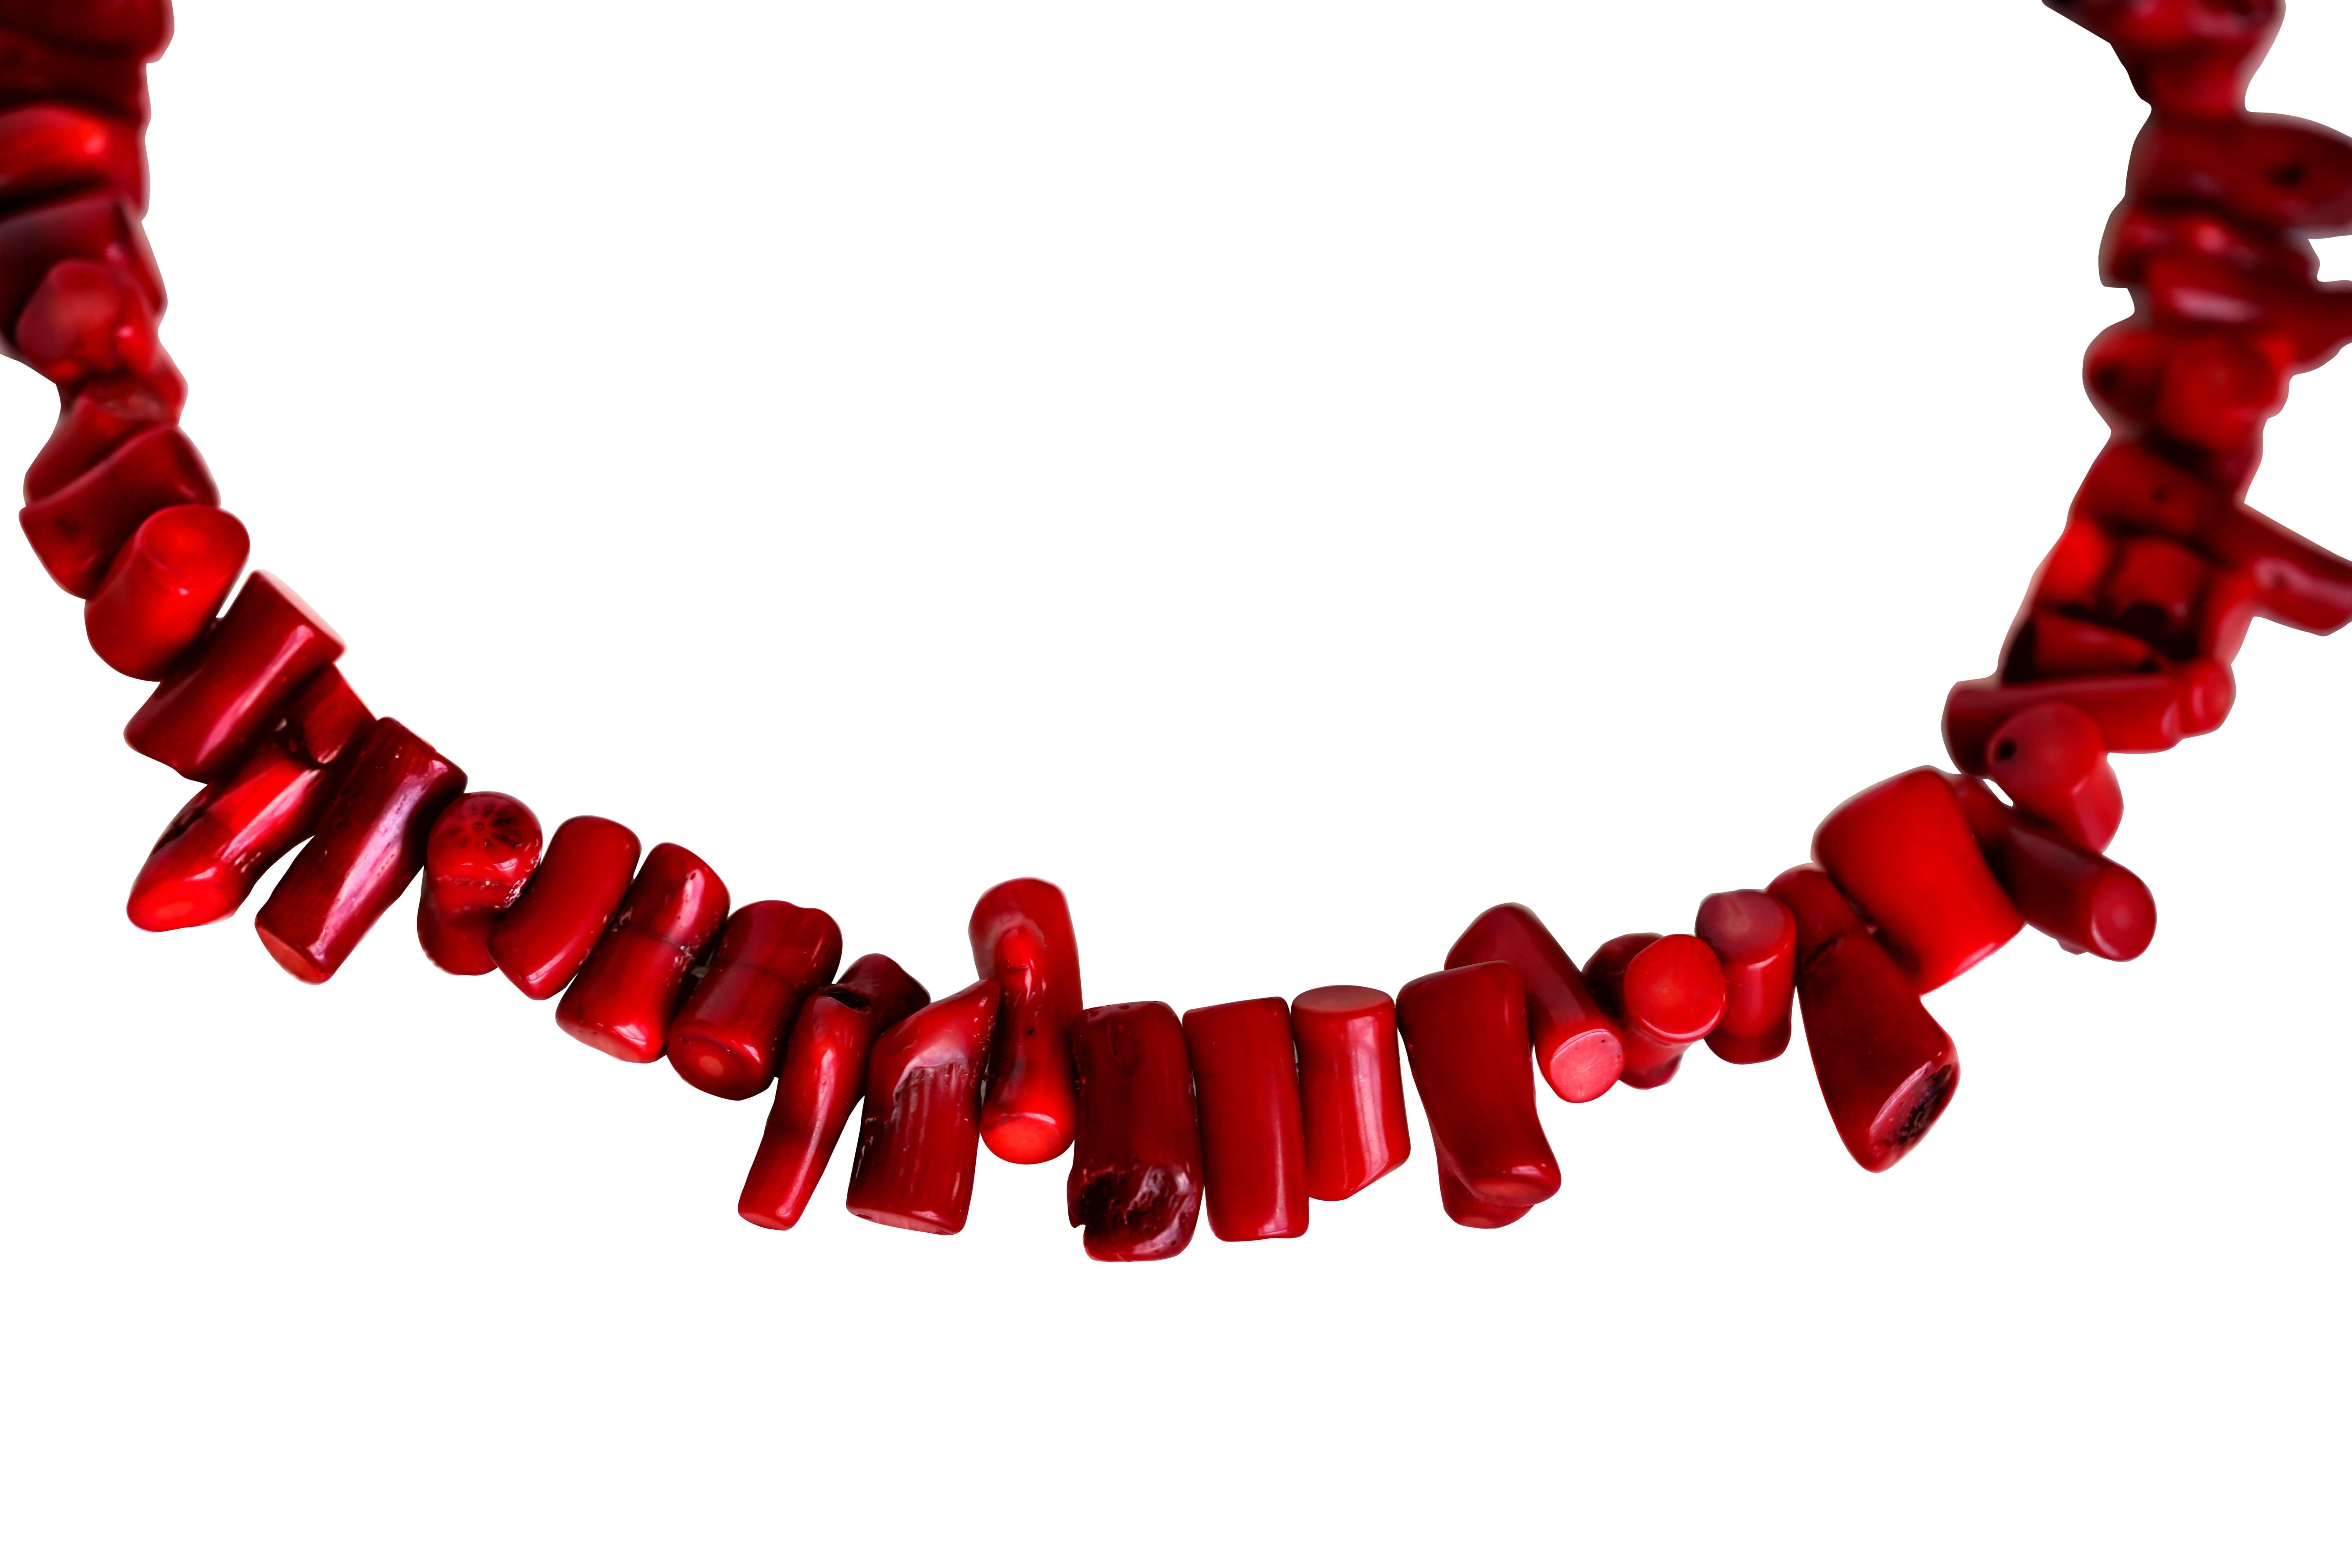 63 Collier irrégulier en corail rouge naturel. Chaque corail rouge naturel a une forme unique.
Longueur du collier : 19.7 inches/50 cm.
Longueur du corail : 7,41 à 19,88 mm.
Largeur du corail : 4,45 à 13,41 mm.
Gamme d'épaisseur : 7,26 à 8 mm.
Poids